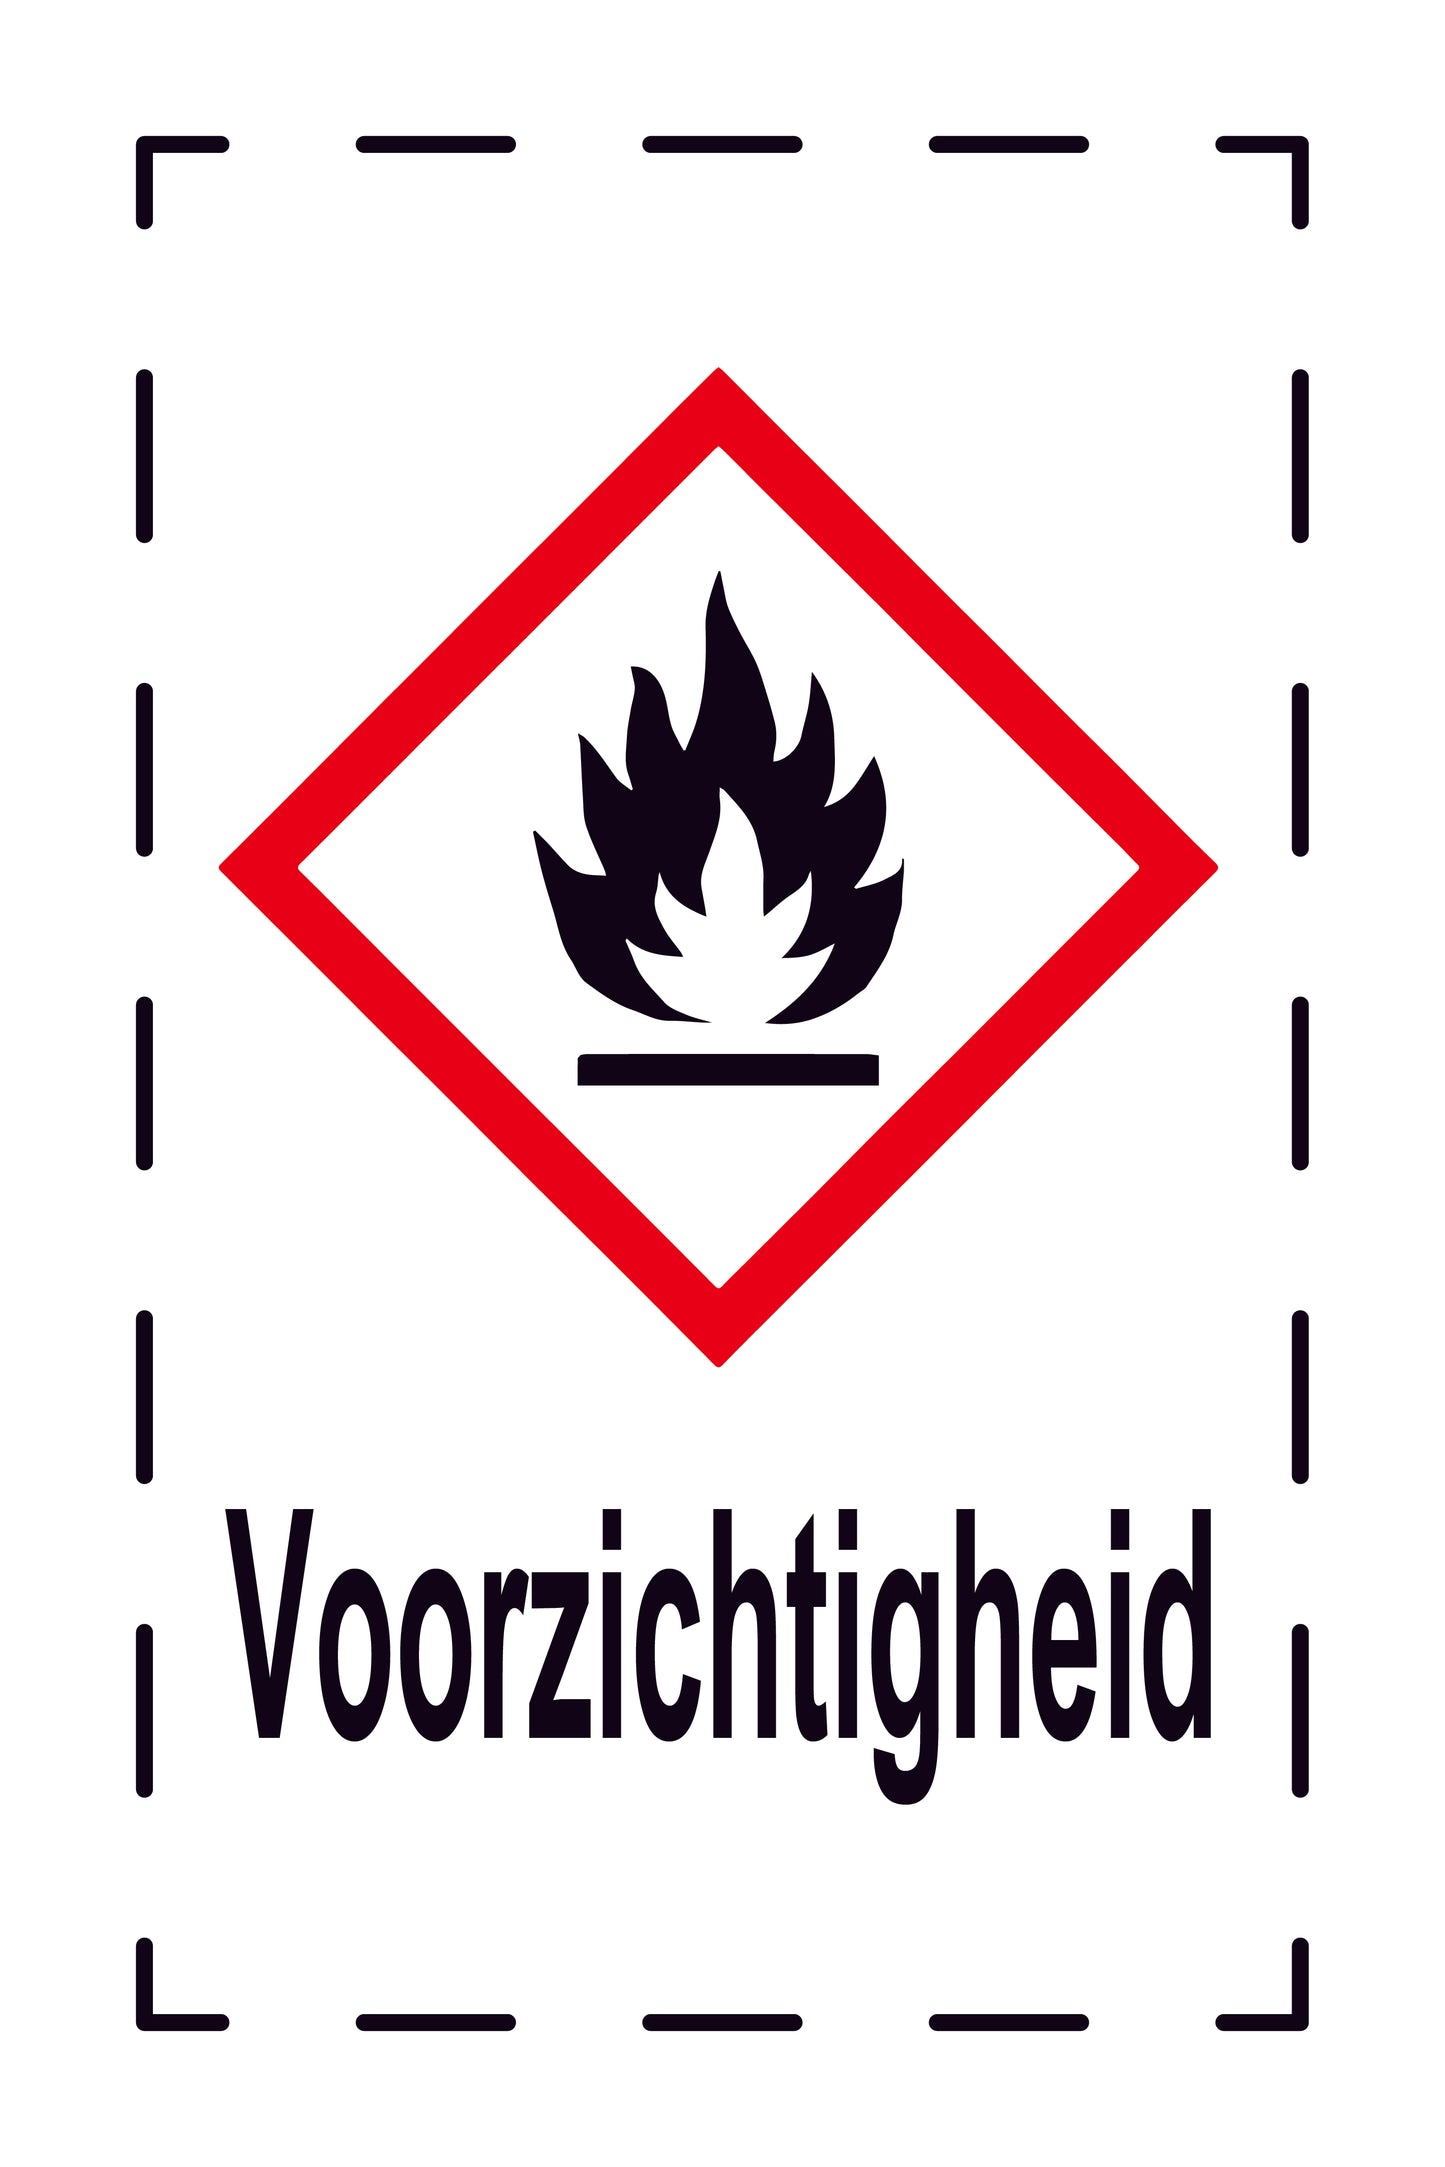 1000 stickers "Voorzichtigheid ontvlambar stoffen" 2,4x3,9 cm tot 15x24 cm, gemaakt van papier of kunststof ES-GHS-02-Voorzichtigheid